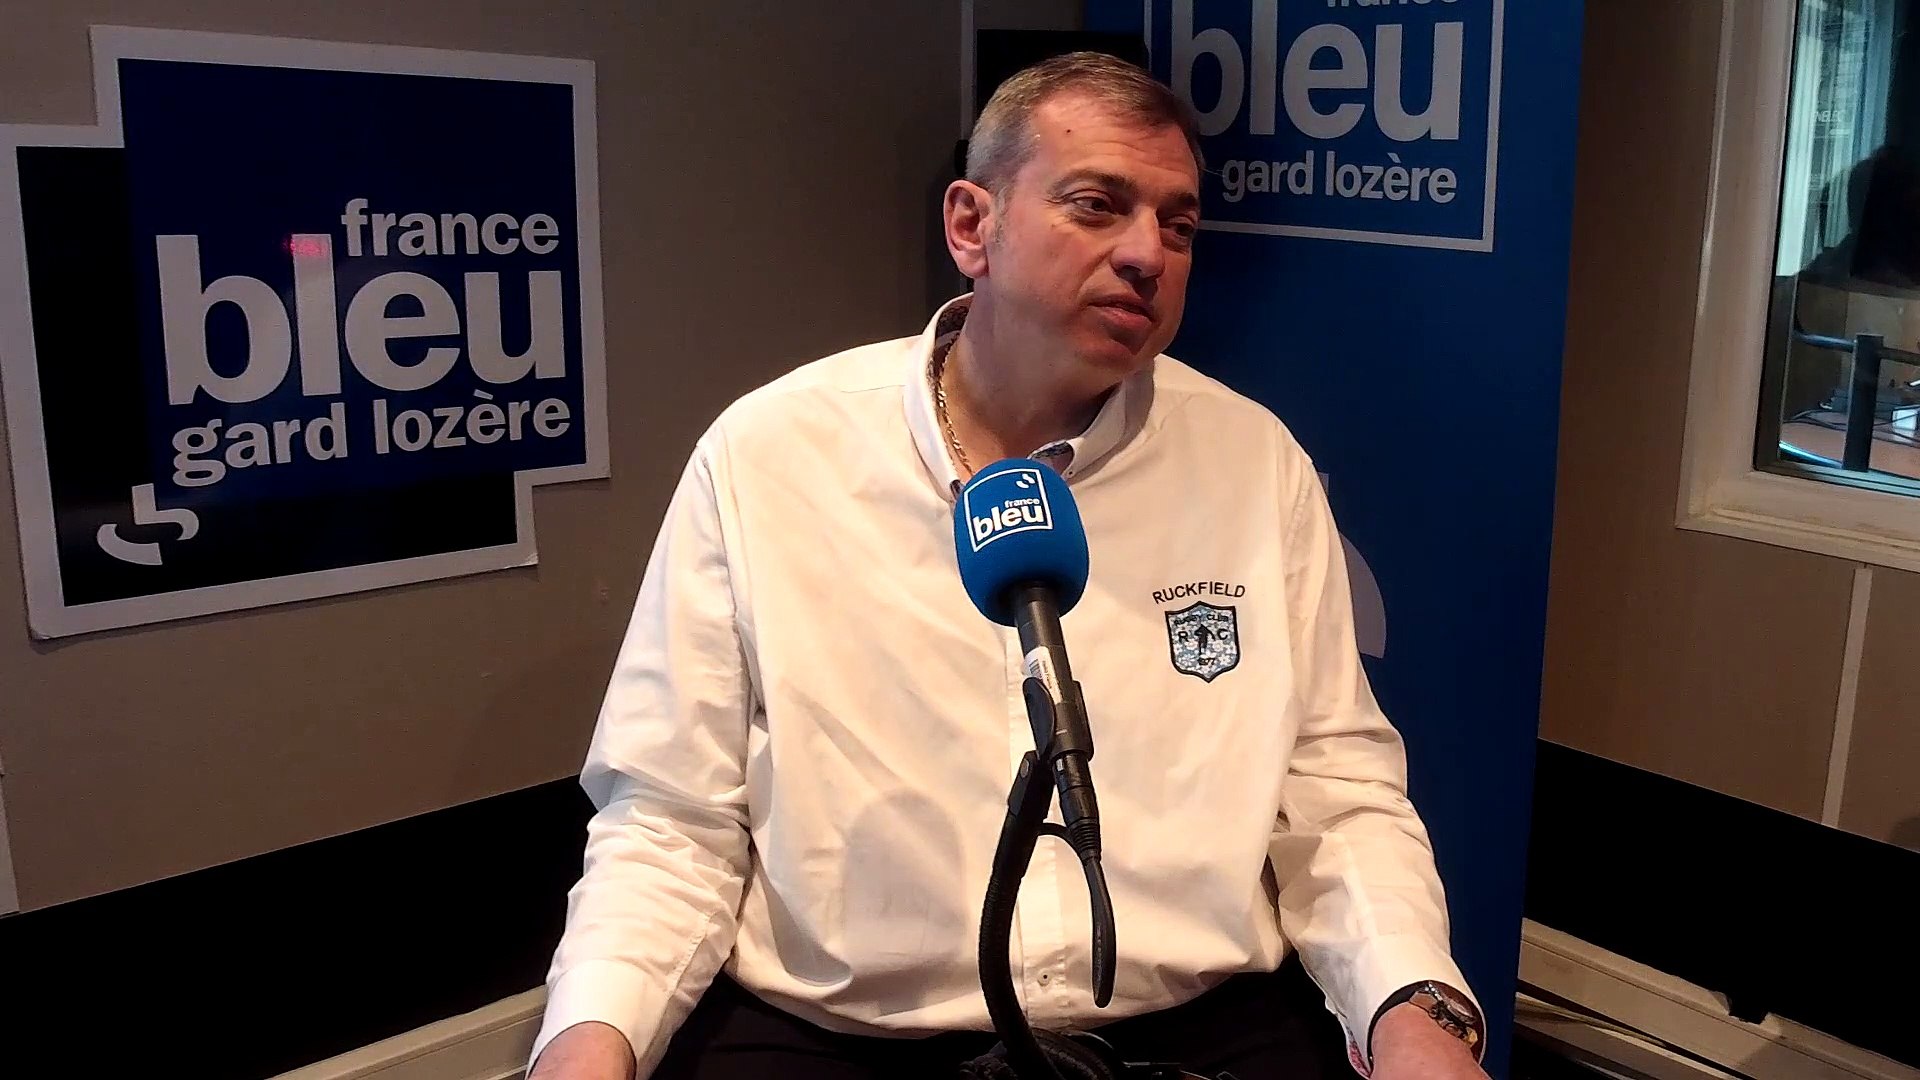 Fabrice GERBER, fondateur de TOUJUST, invité "grand format" de France Bleu  Gard Lozère - Vidéo Dailymotion